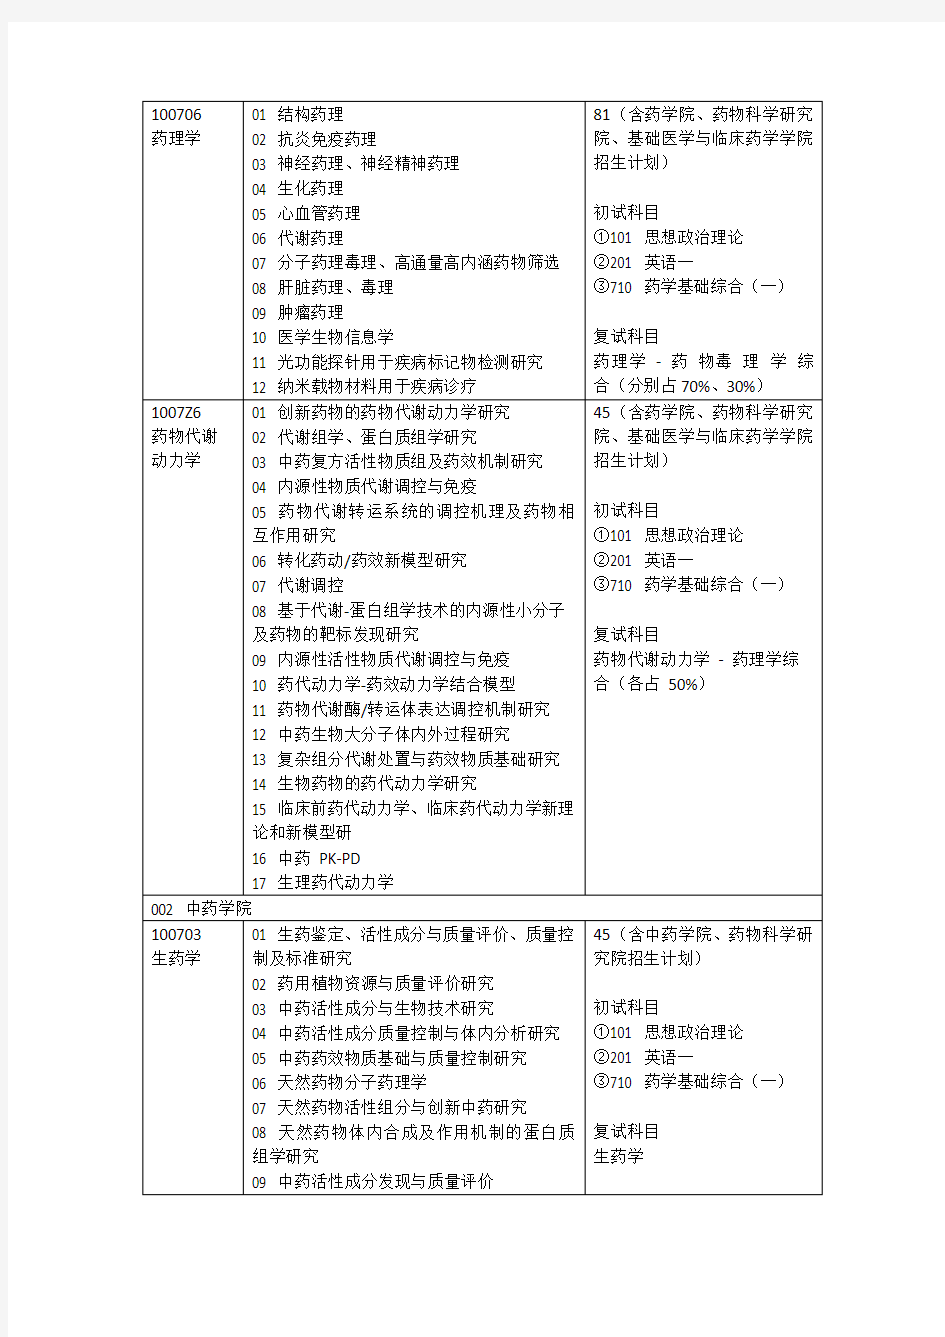 中国药科大学710 药学基础综合(一)专业分析--适用专业